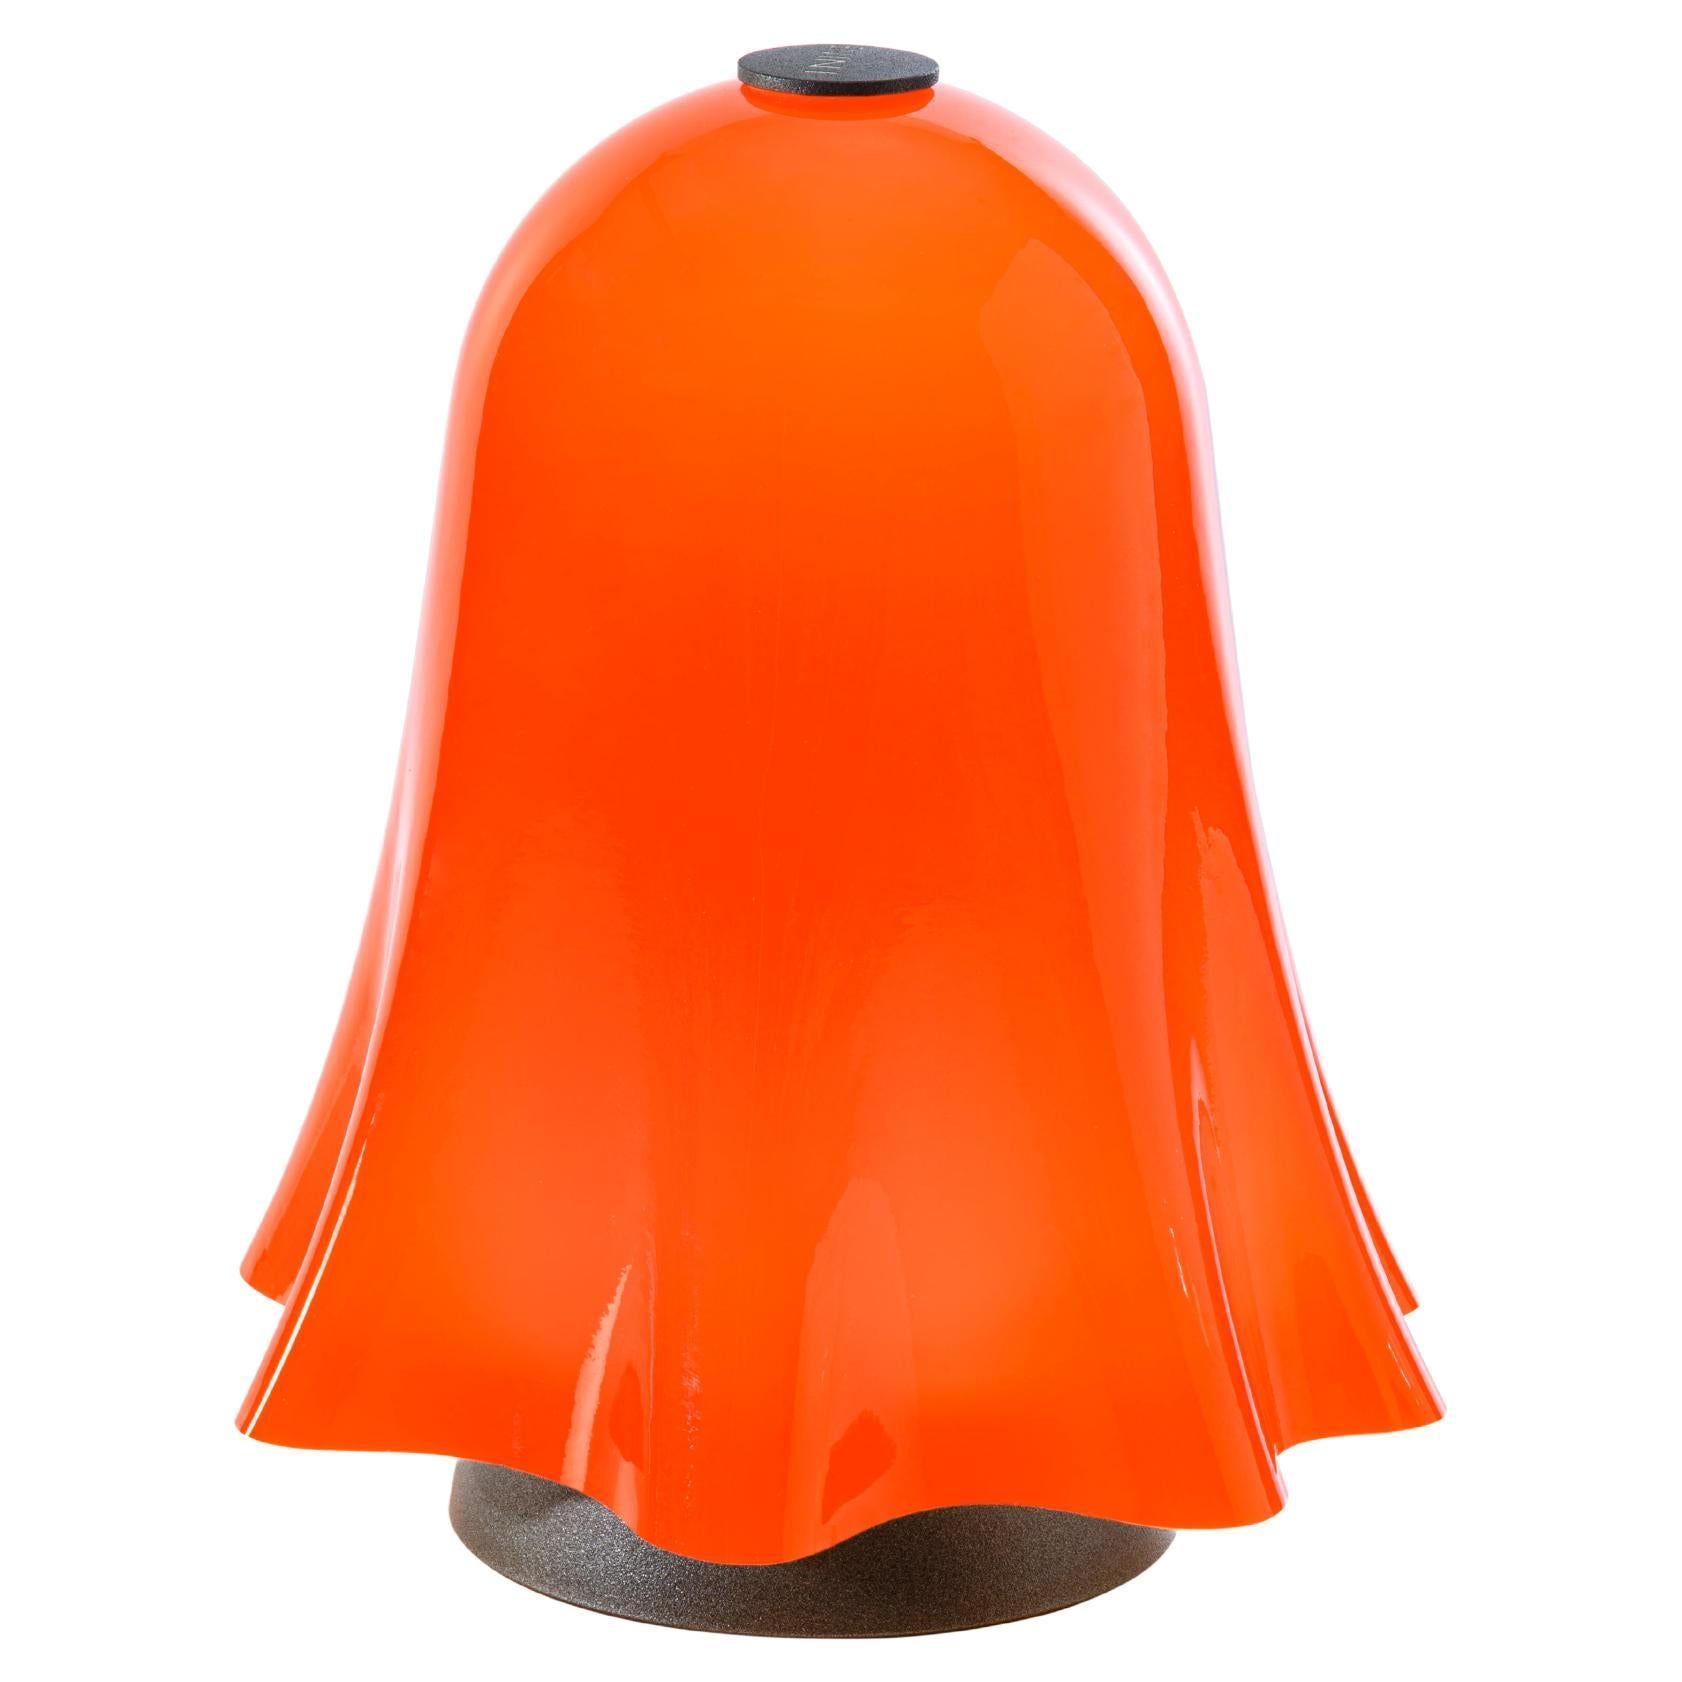 Lampe Venini orange, rechargeable, gradable, touchable 